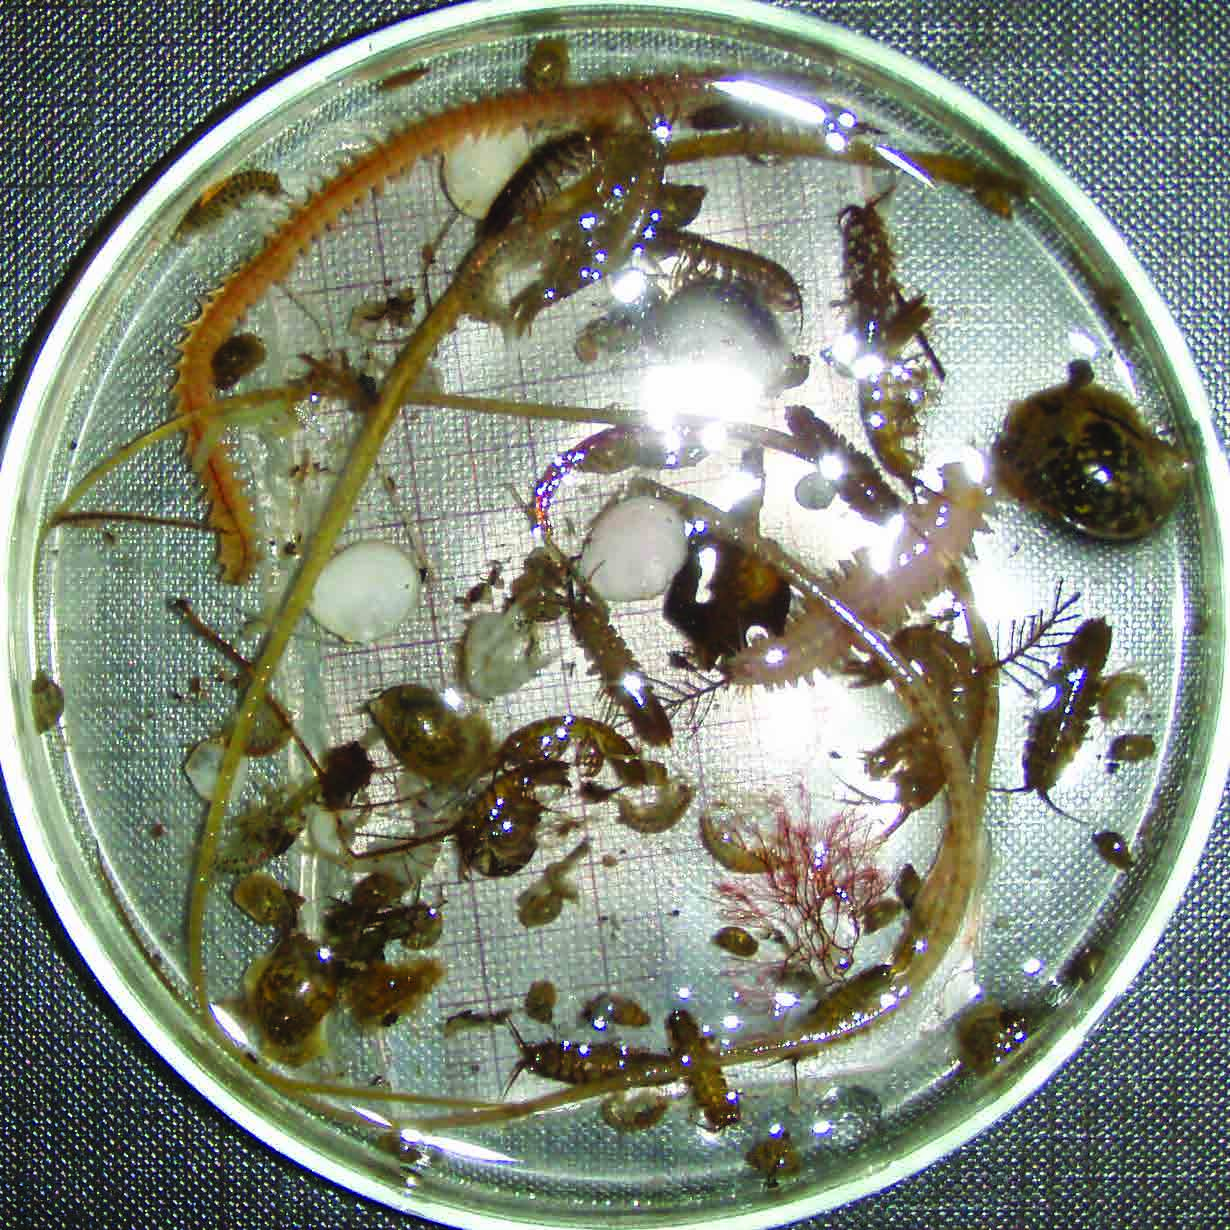 punahelmilevä leväkatka itämerensimpukka Laukolahden pohjakasvillisuuden valtalajeja ovat rakkolevä (Fucus vesiculosus) 